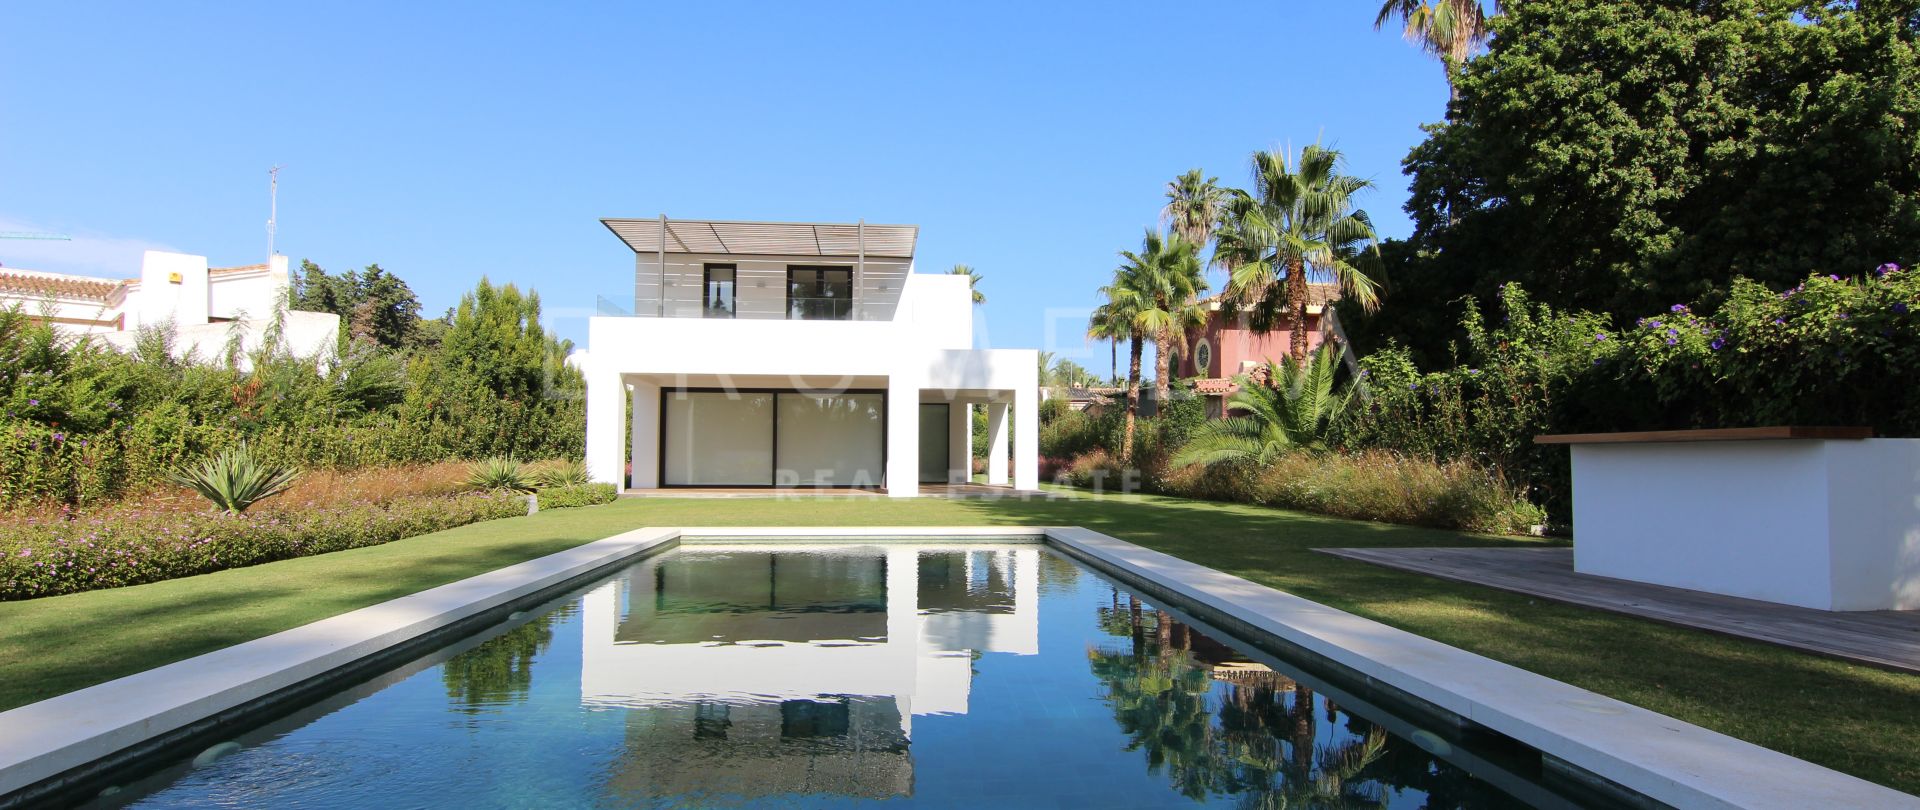 Wunderschöne moderne Luxus-Villa direkt am Strand in Guadalmina Baja, San Pedro